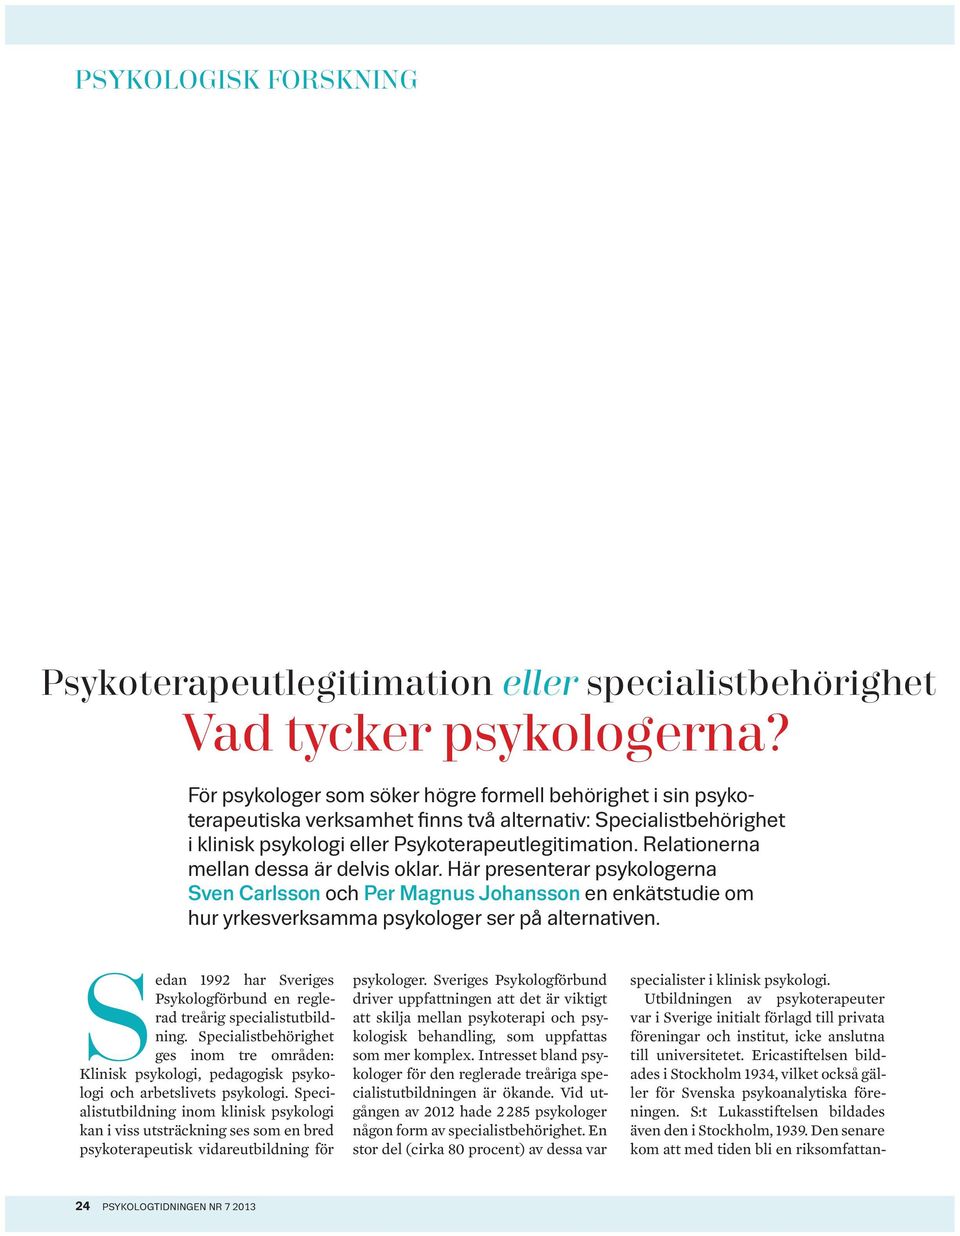 Relationerna mellan dessa är delvis oklar. Här presenterar psykologerna Sven Carlsson och Per Magnus Johansson en enkätstudie om hur yrkesverksamma psykologer ser på alternativen.